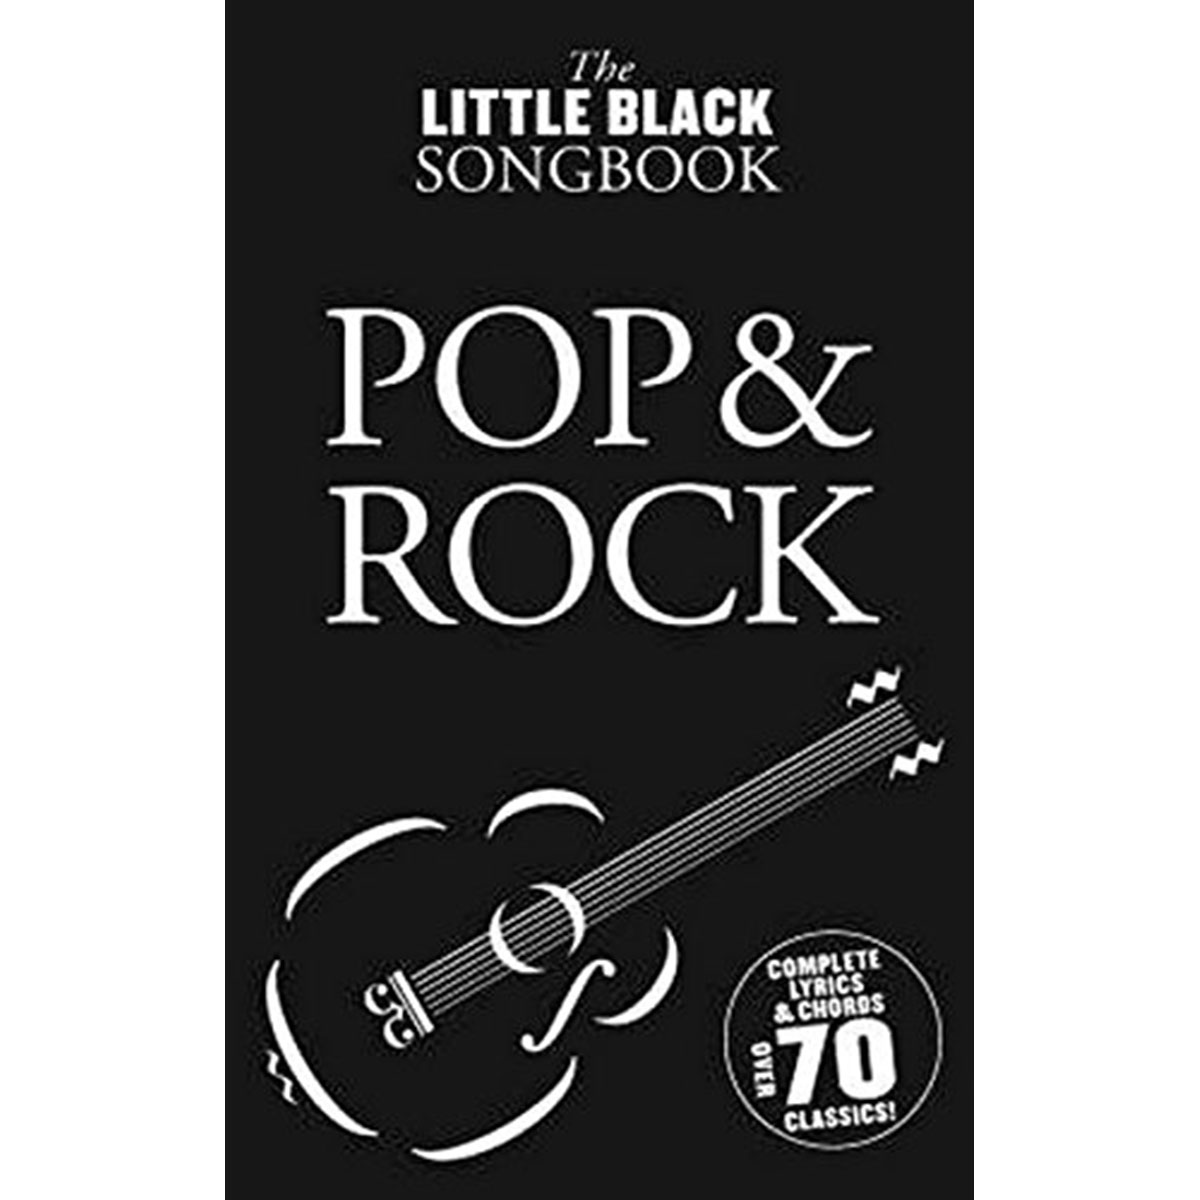 Little black songbook - Pop & Rock Over 70